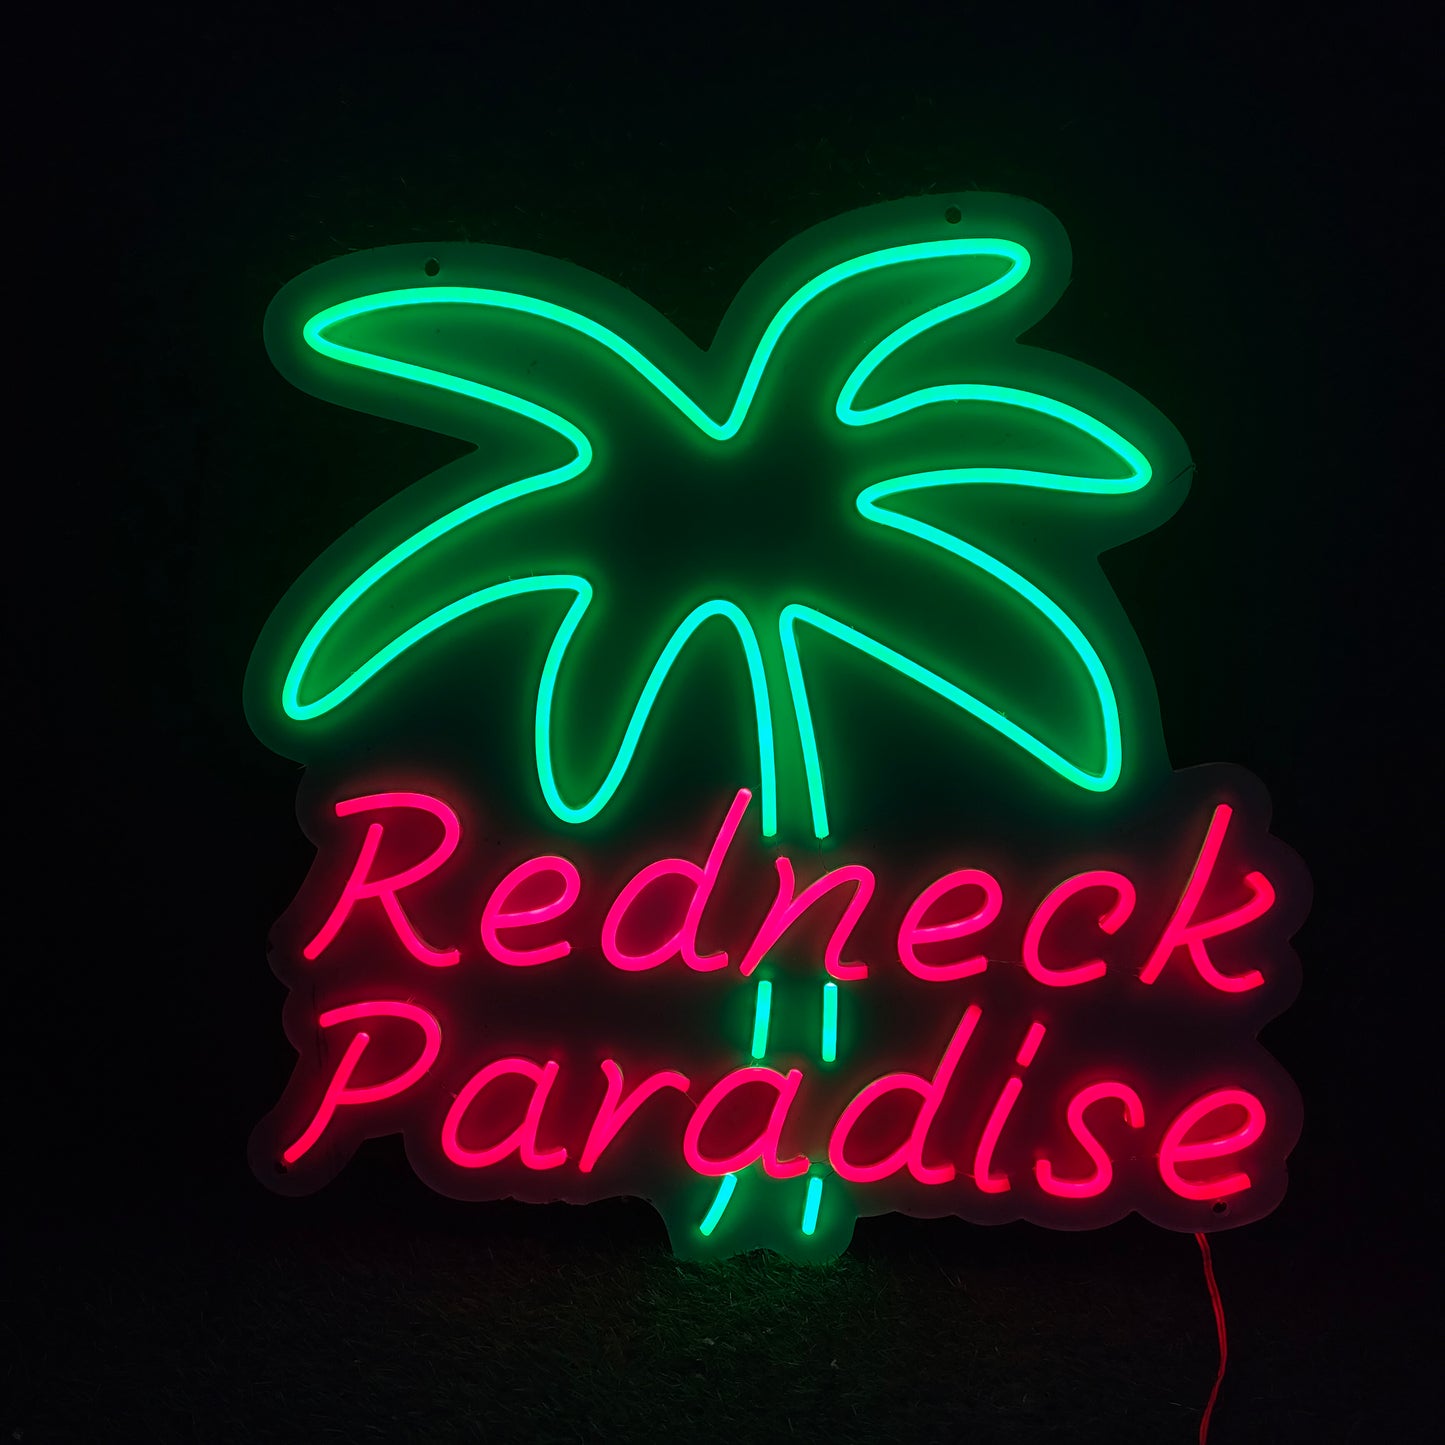 redneck paradise neon sign